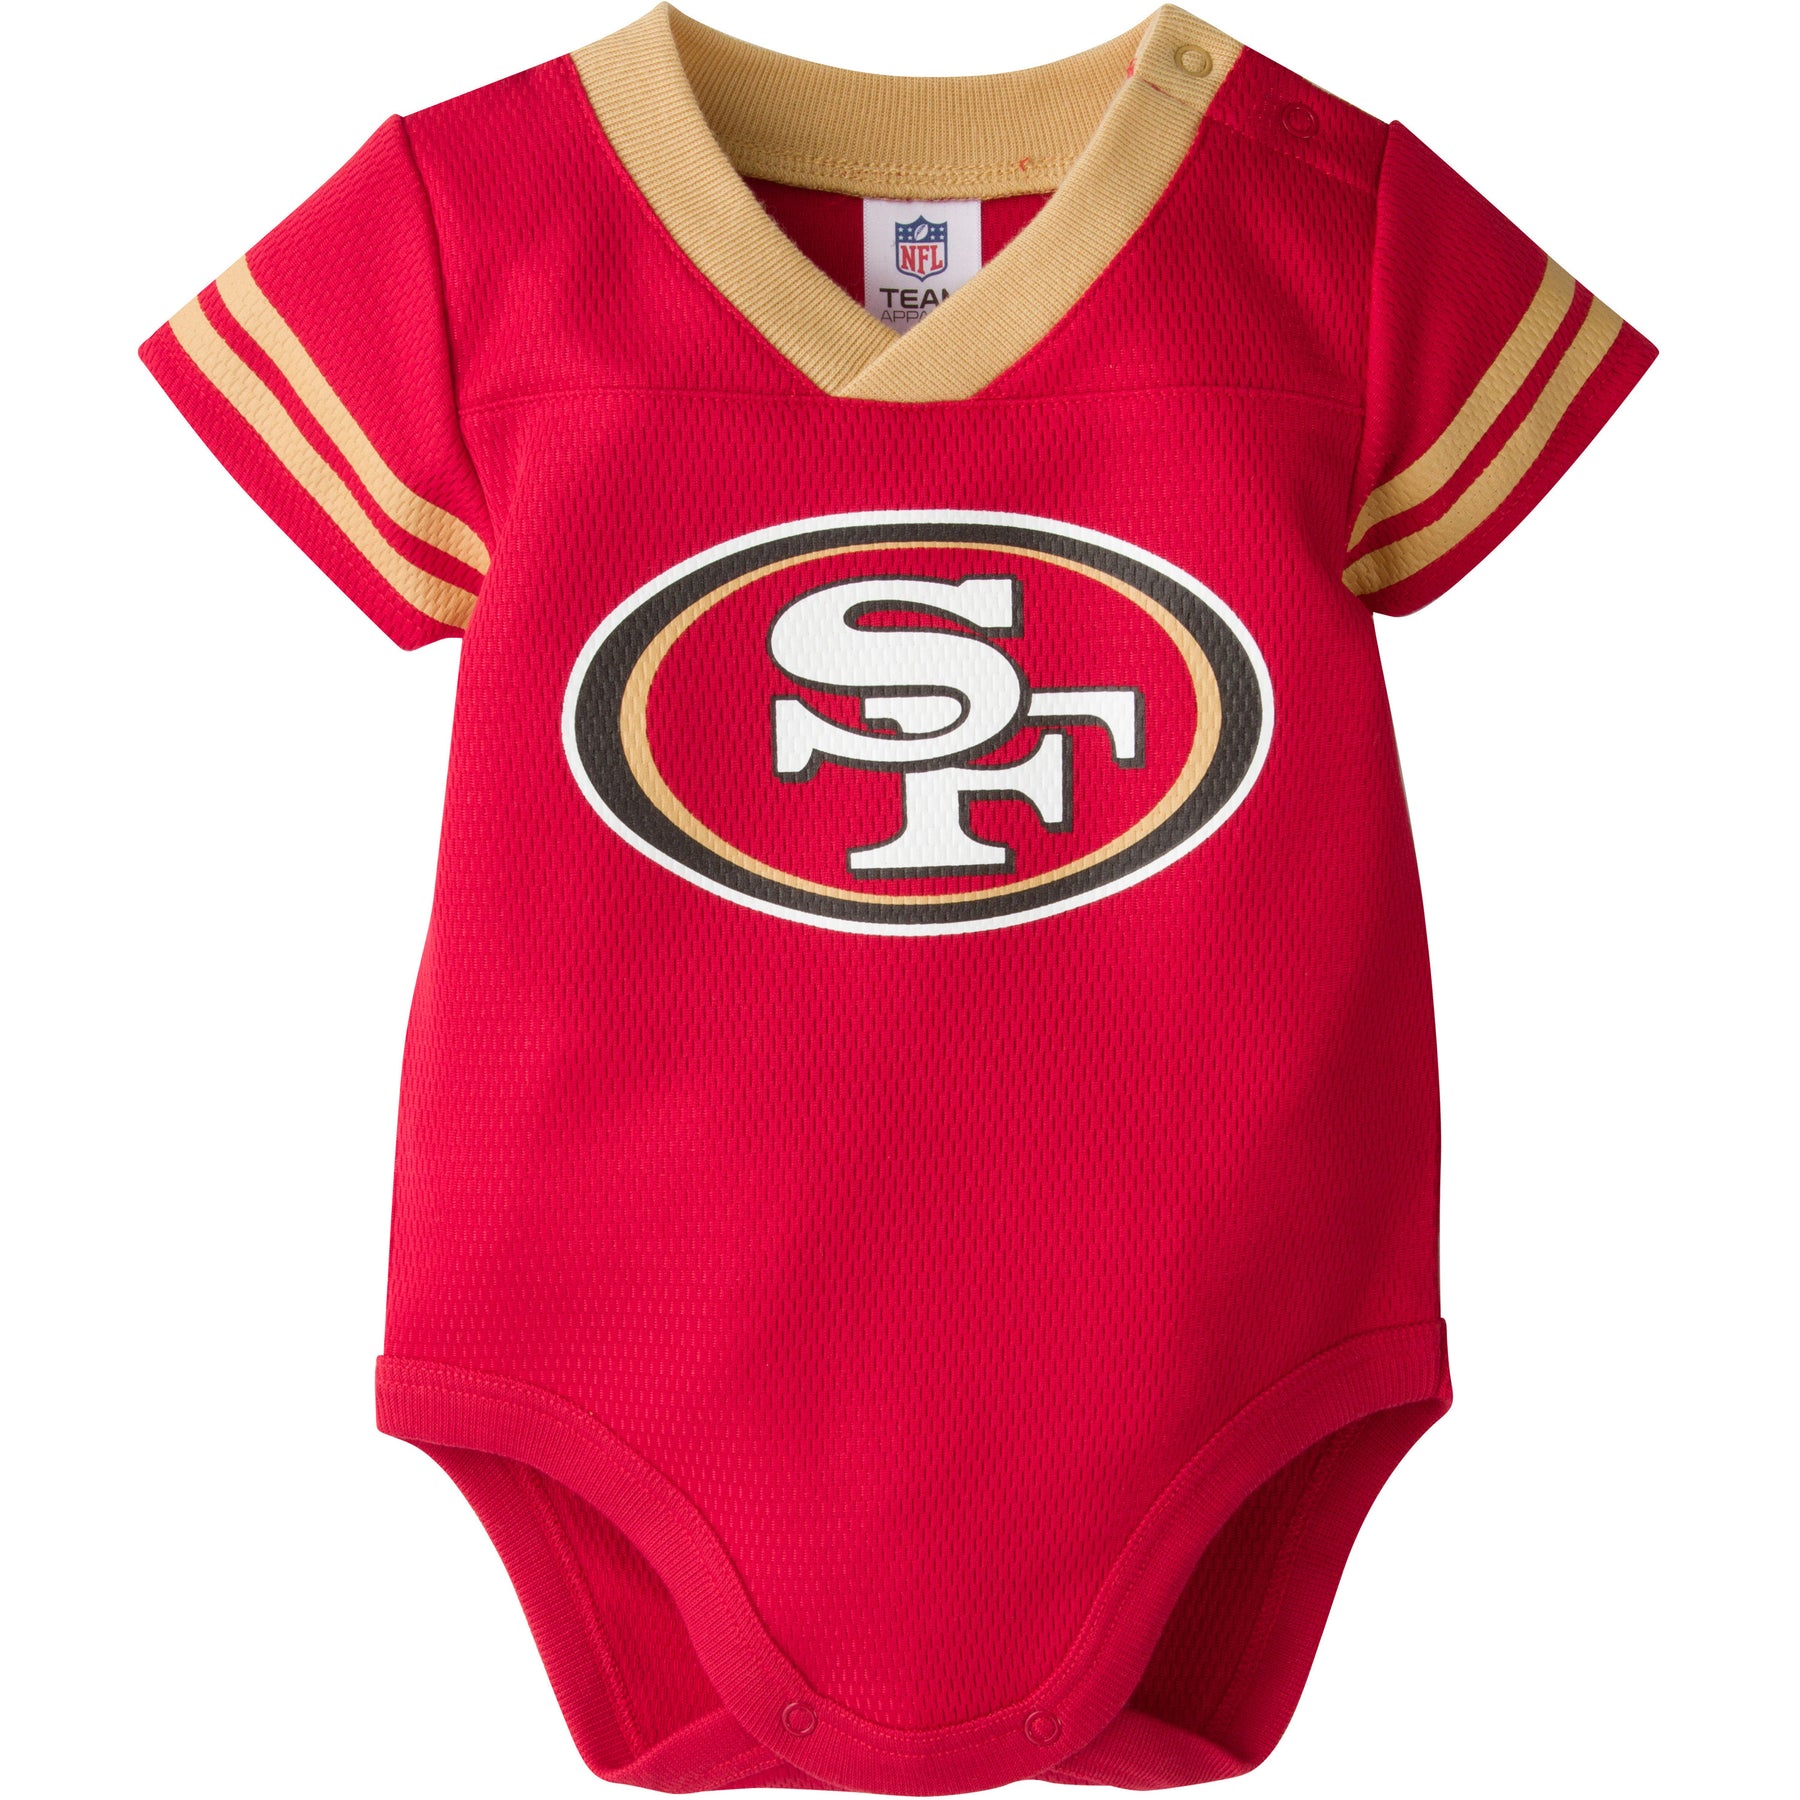 49ers baby jersey onesie